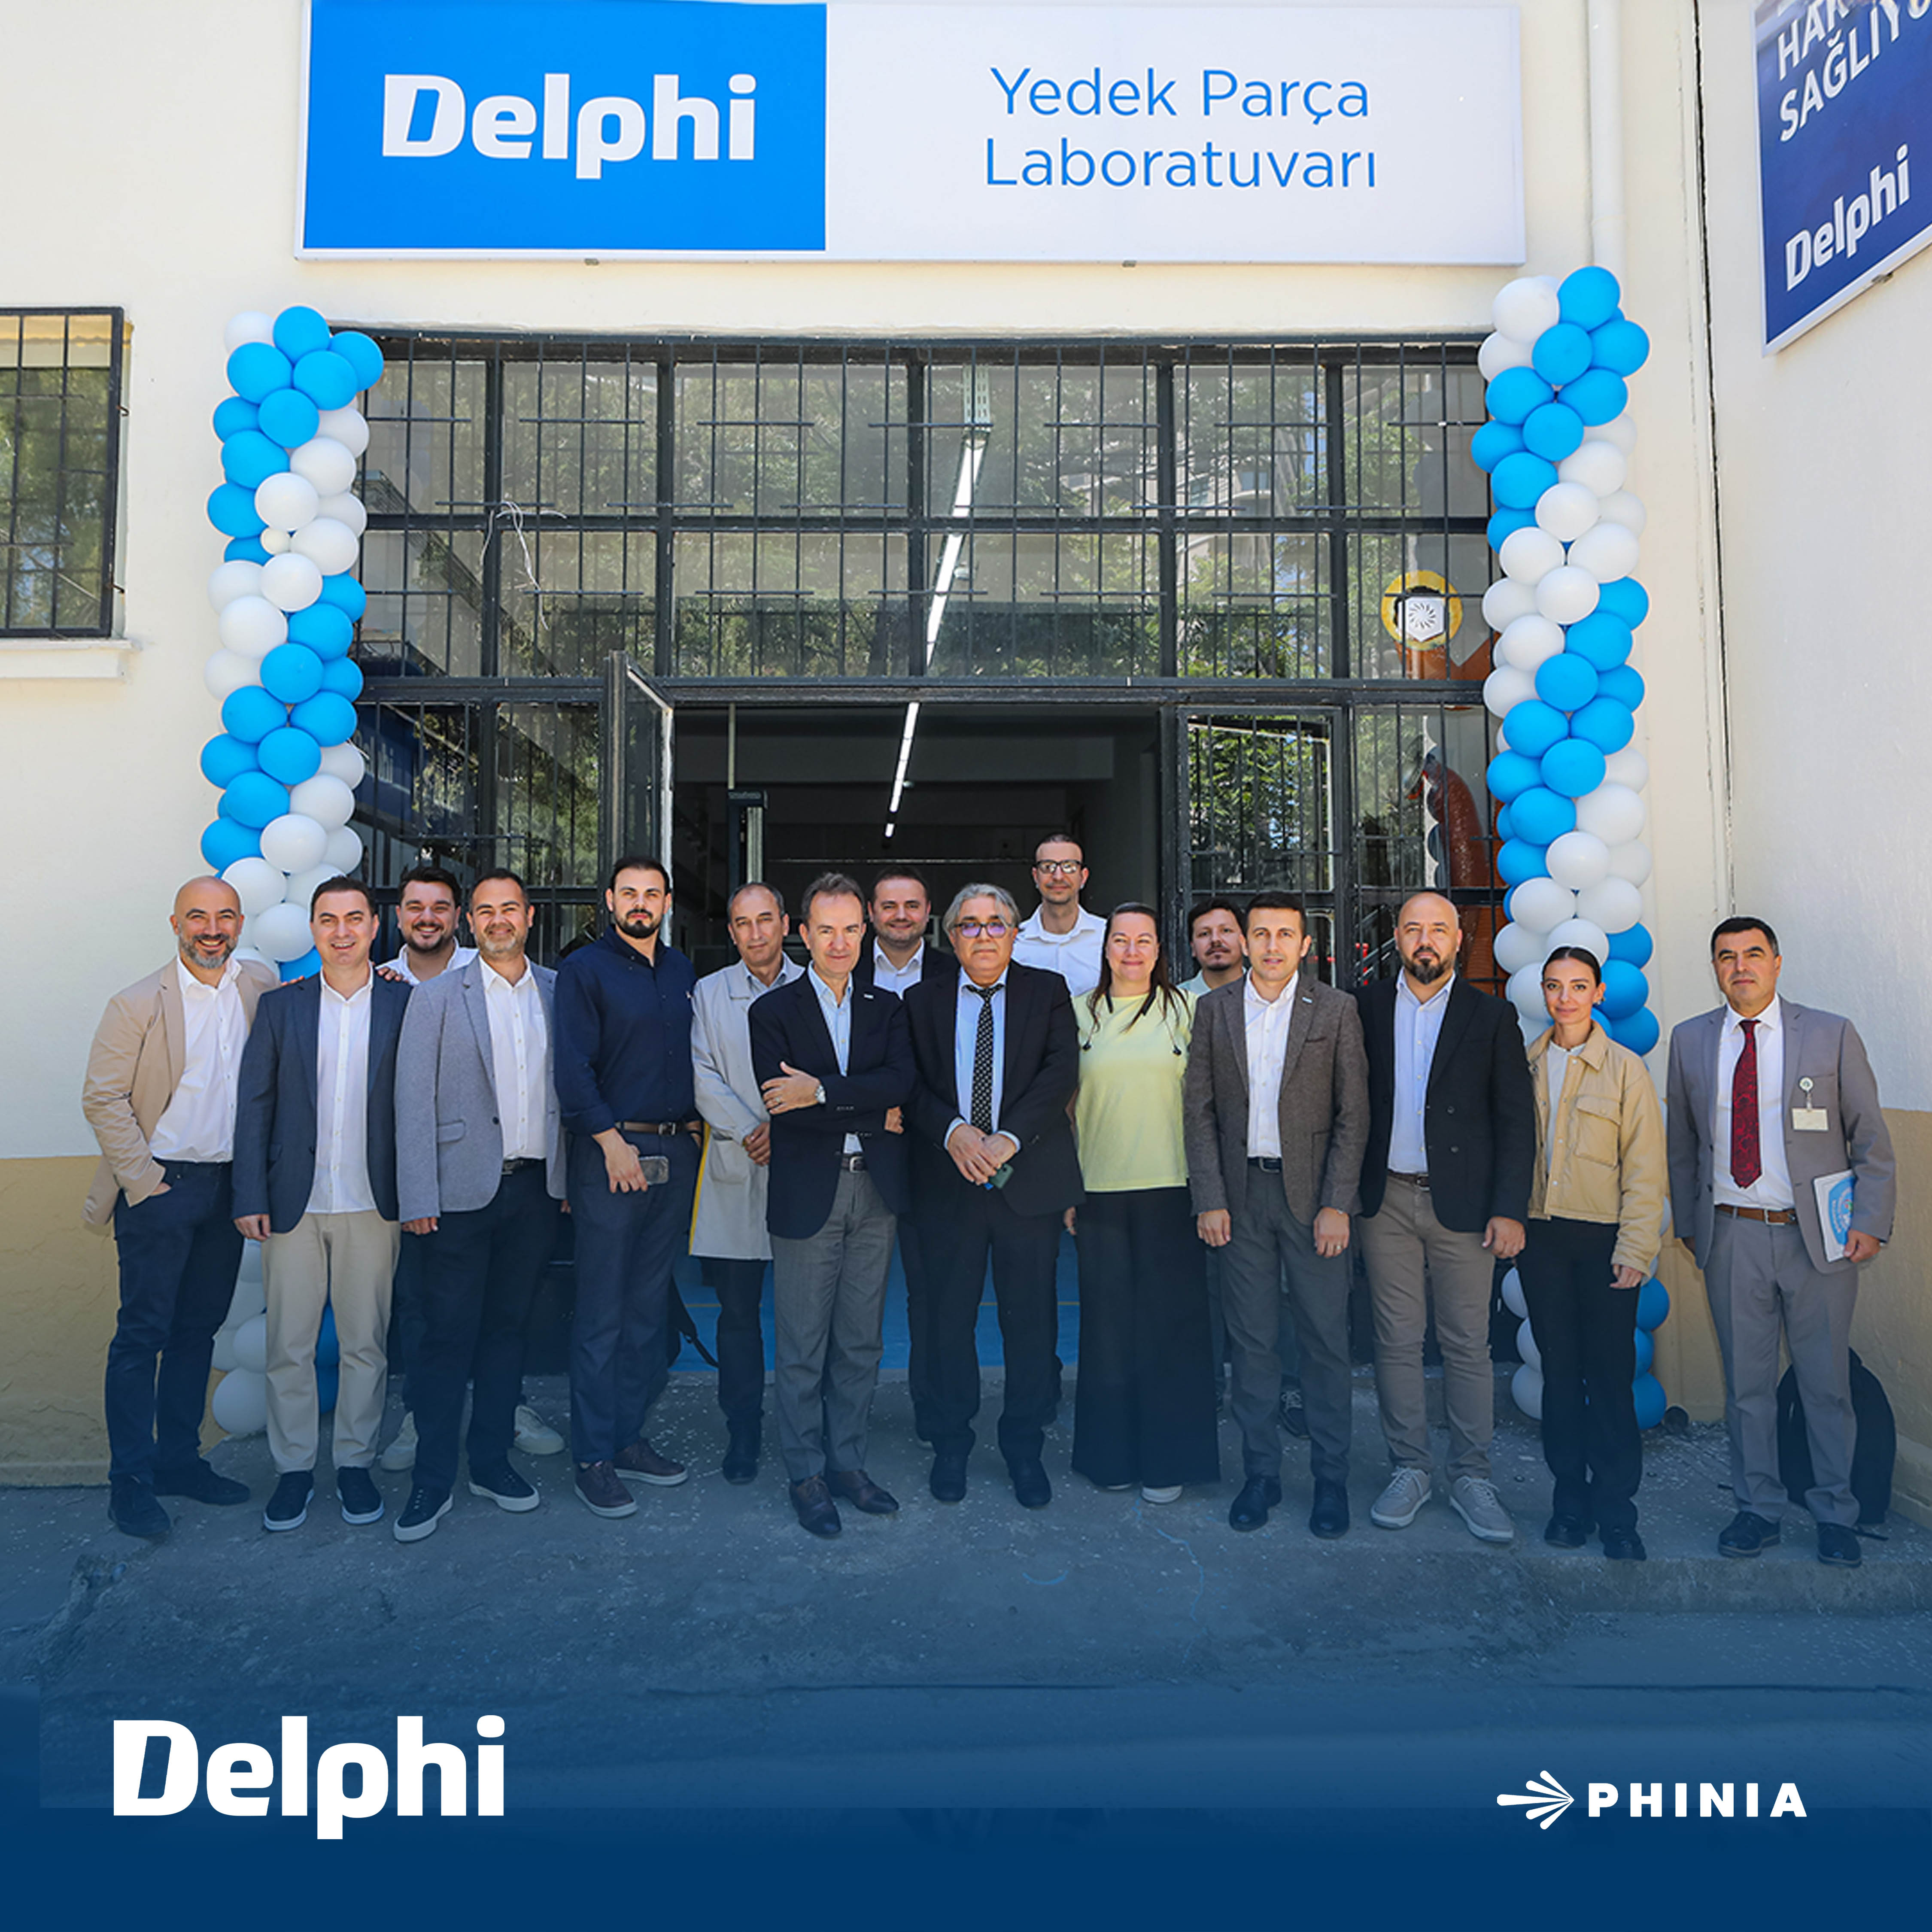 Delphi İzmir’de açtığı yedek parça laboratuvarları ile eğitime destek veriyor